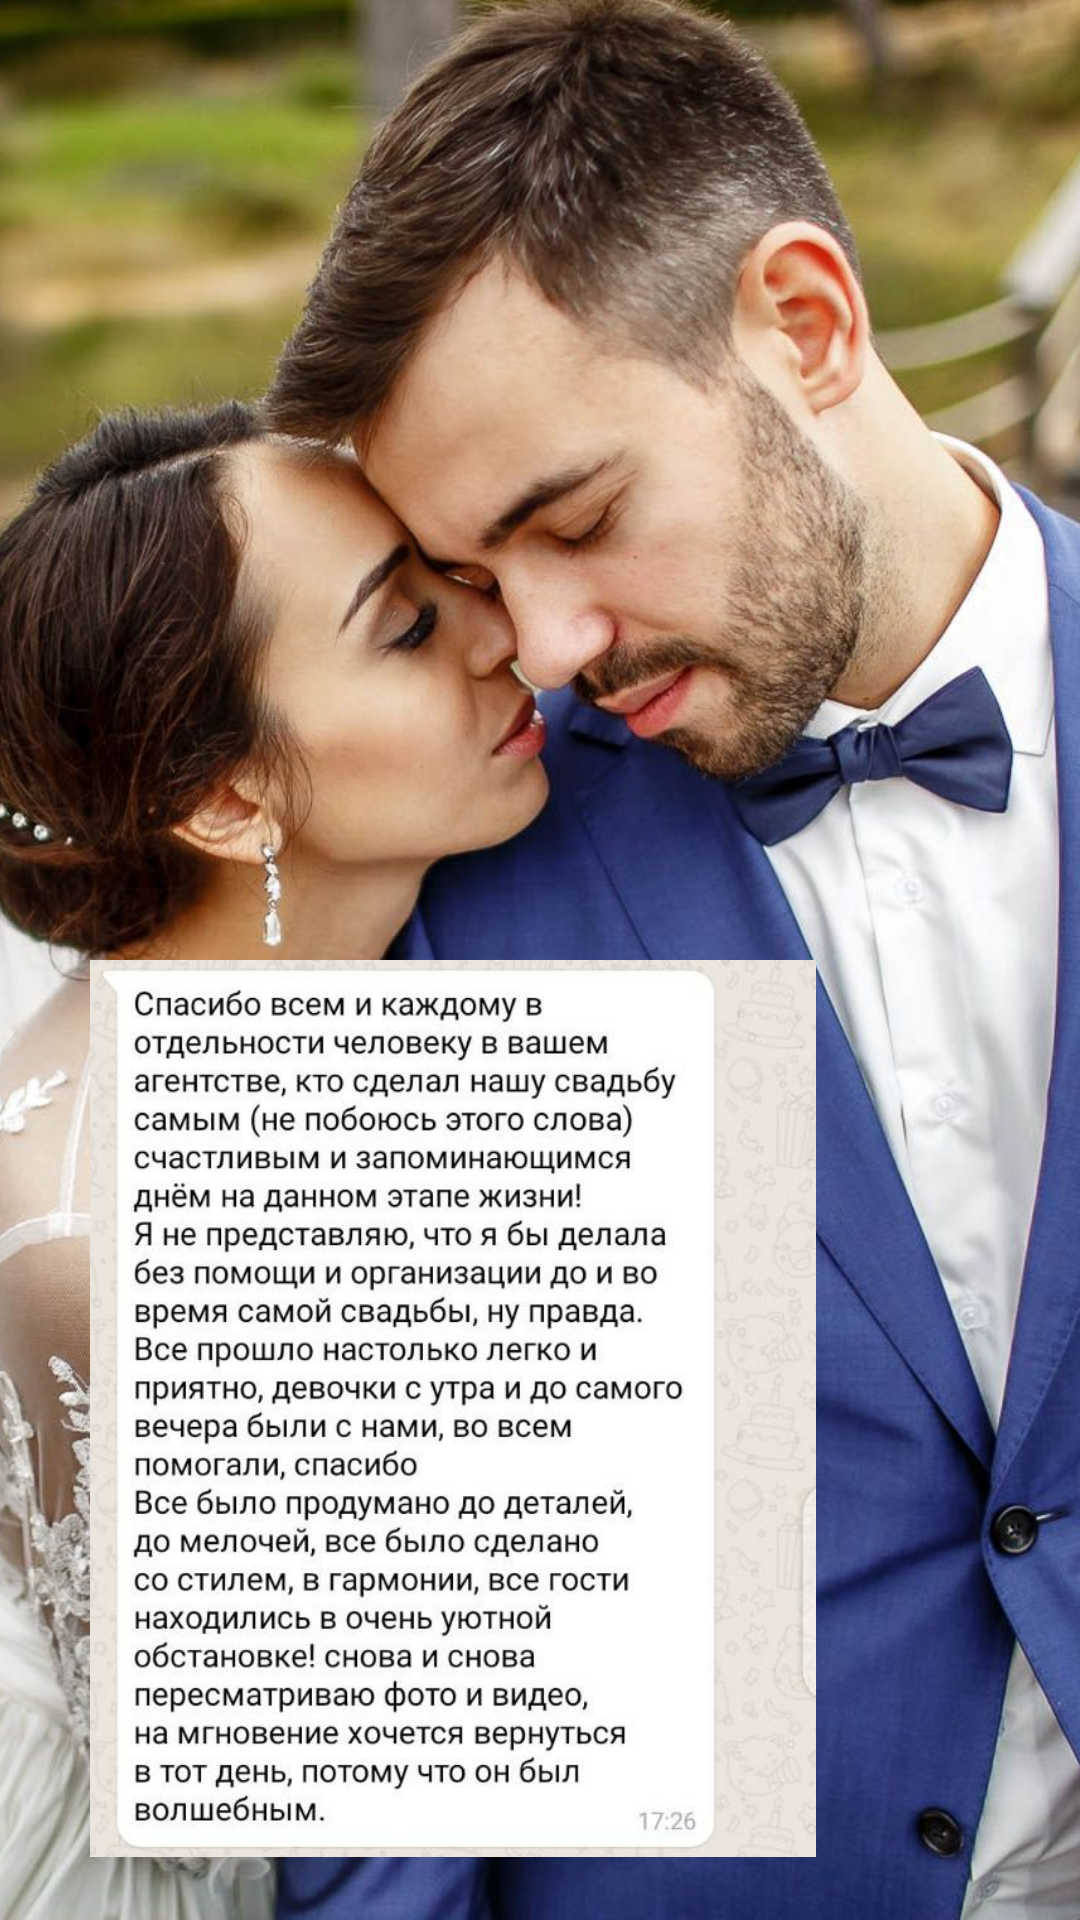 Организация свадьбы в Кемерово
от компании Pandaevent